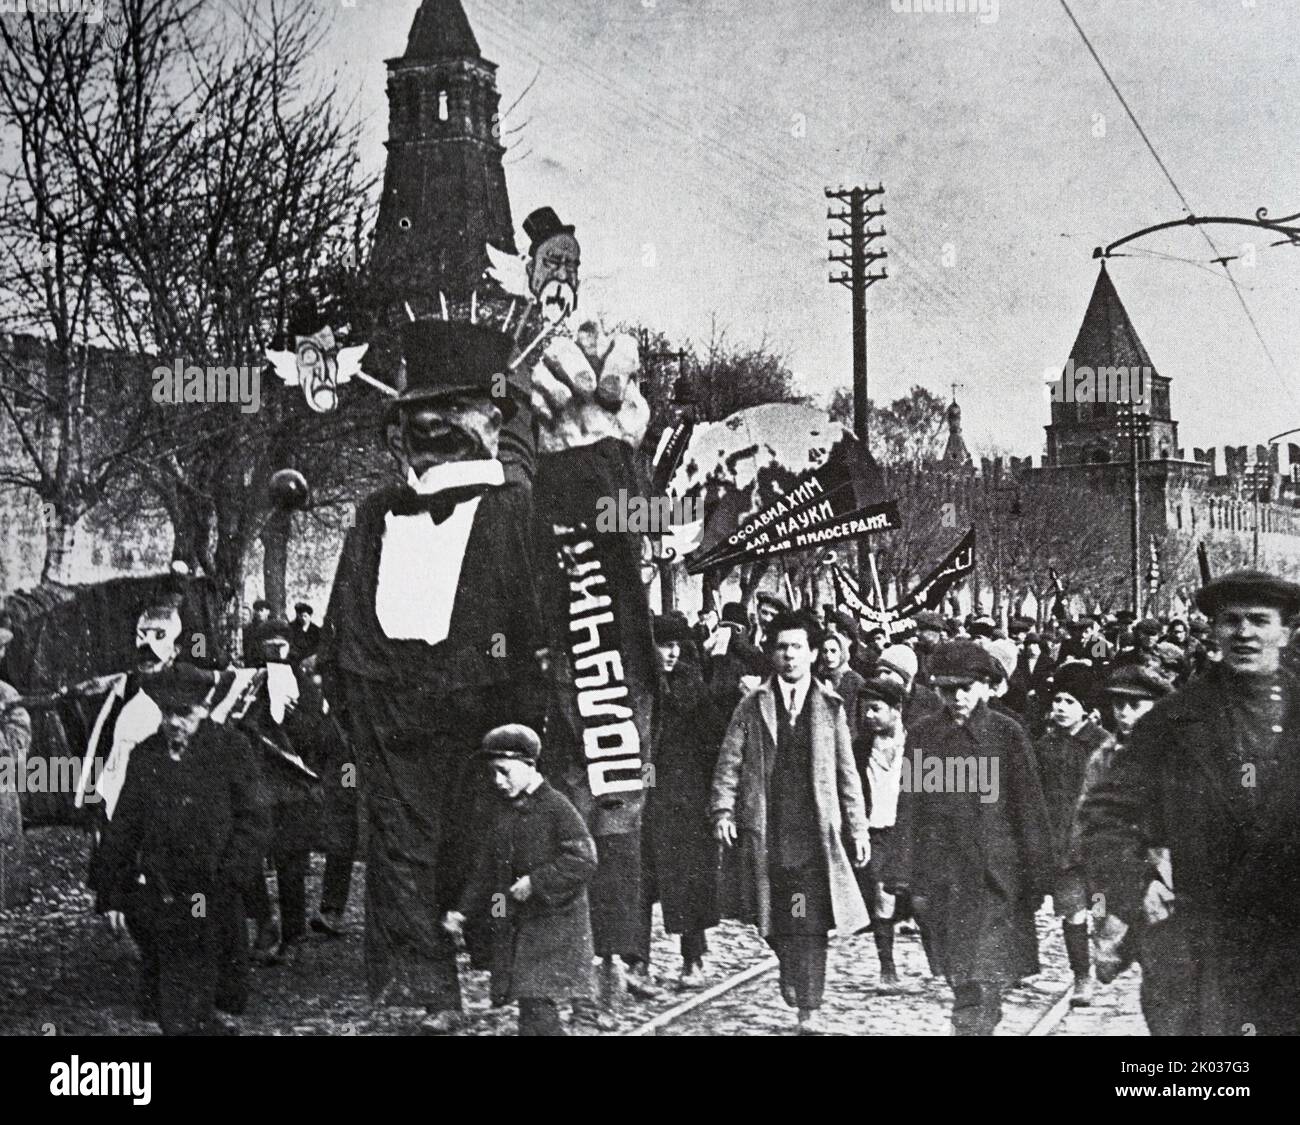 Karnevalsgruppe "Funeral of Capitalism" bei einer Demonstration in Moskau am 7. November 1928. Archiv von I. M. Bibikova. Stockfoto